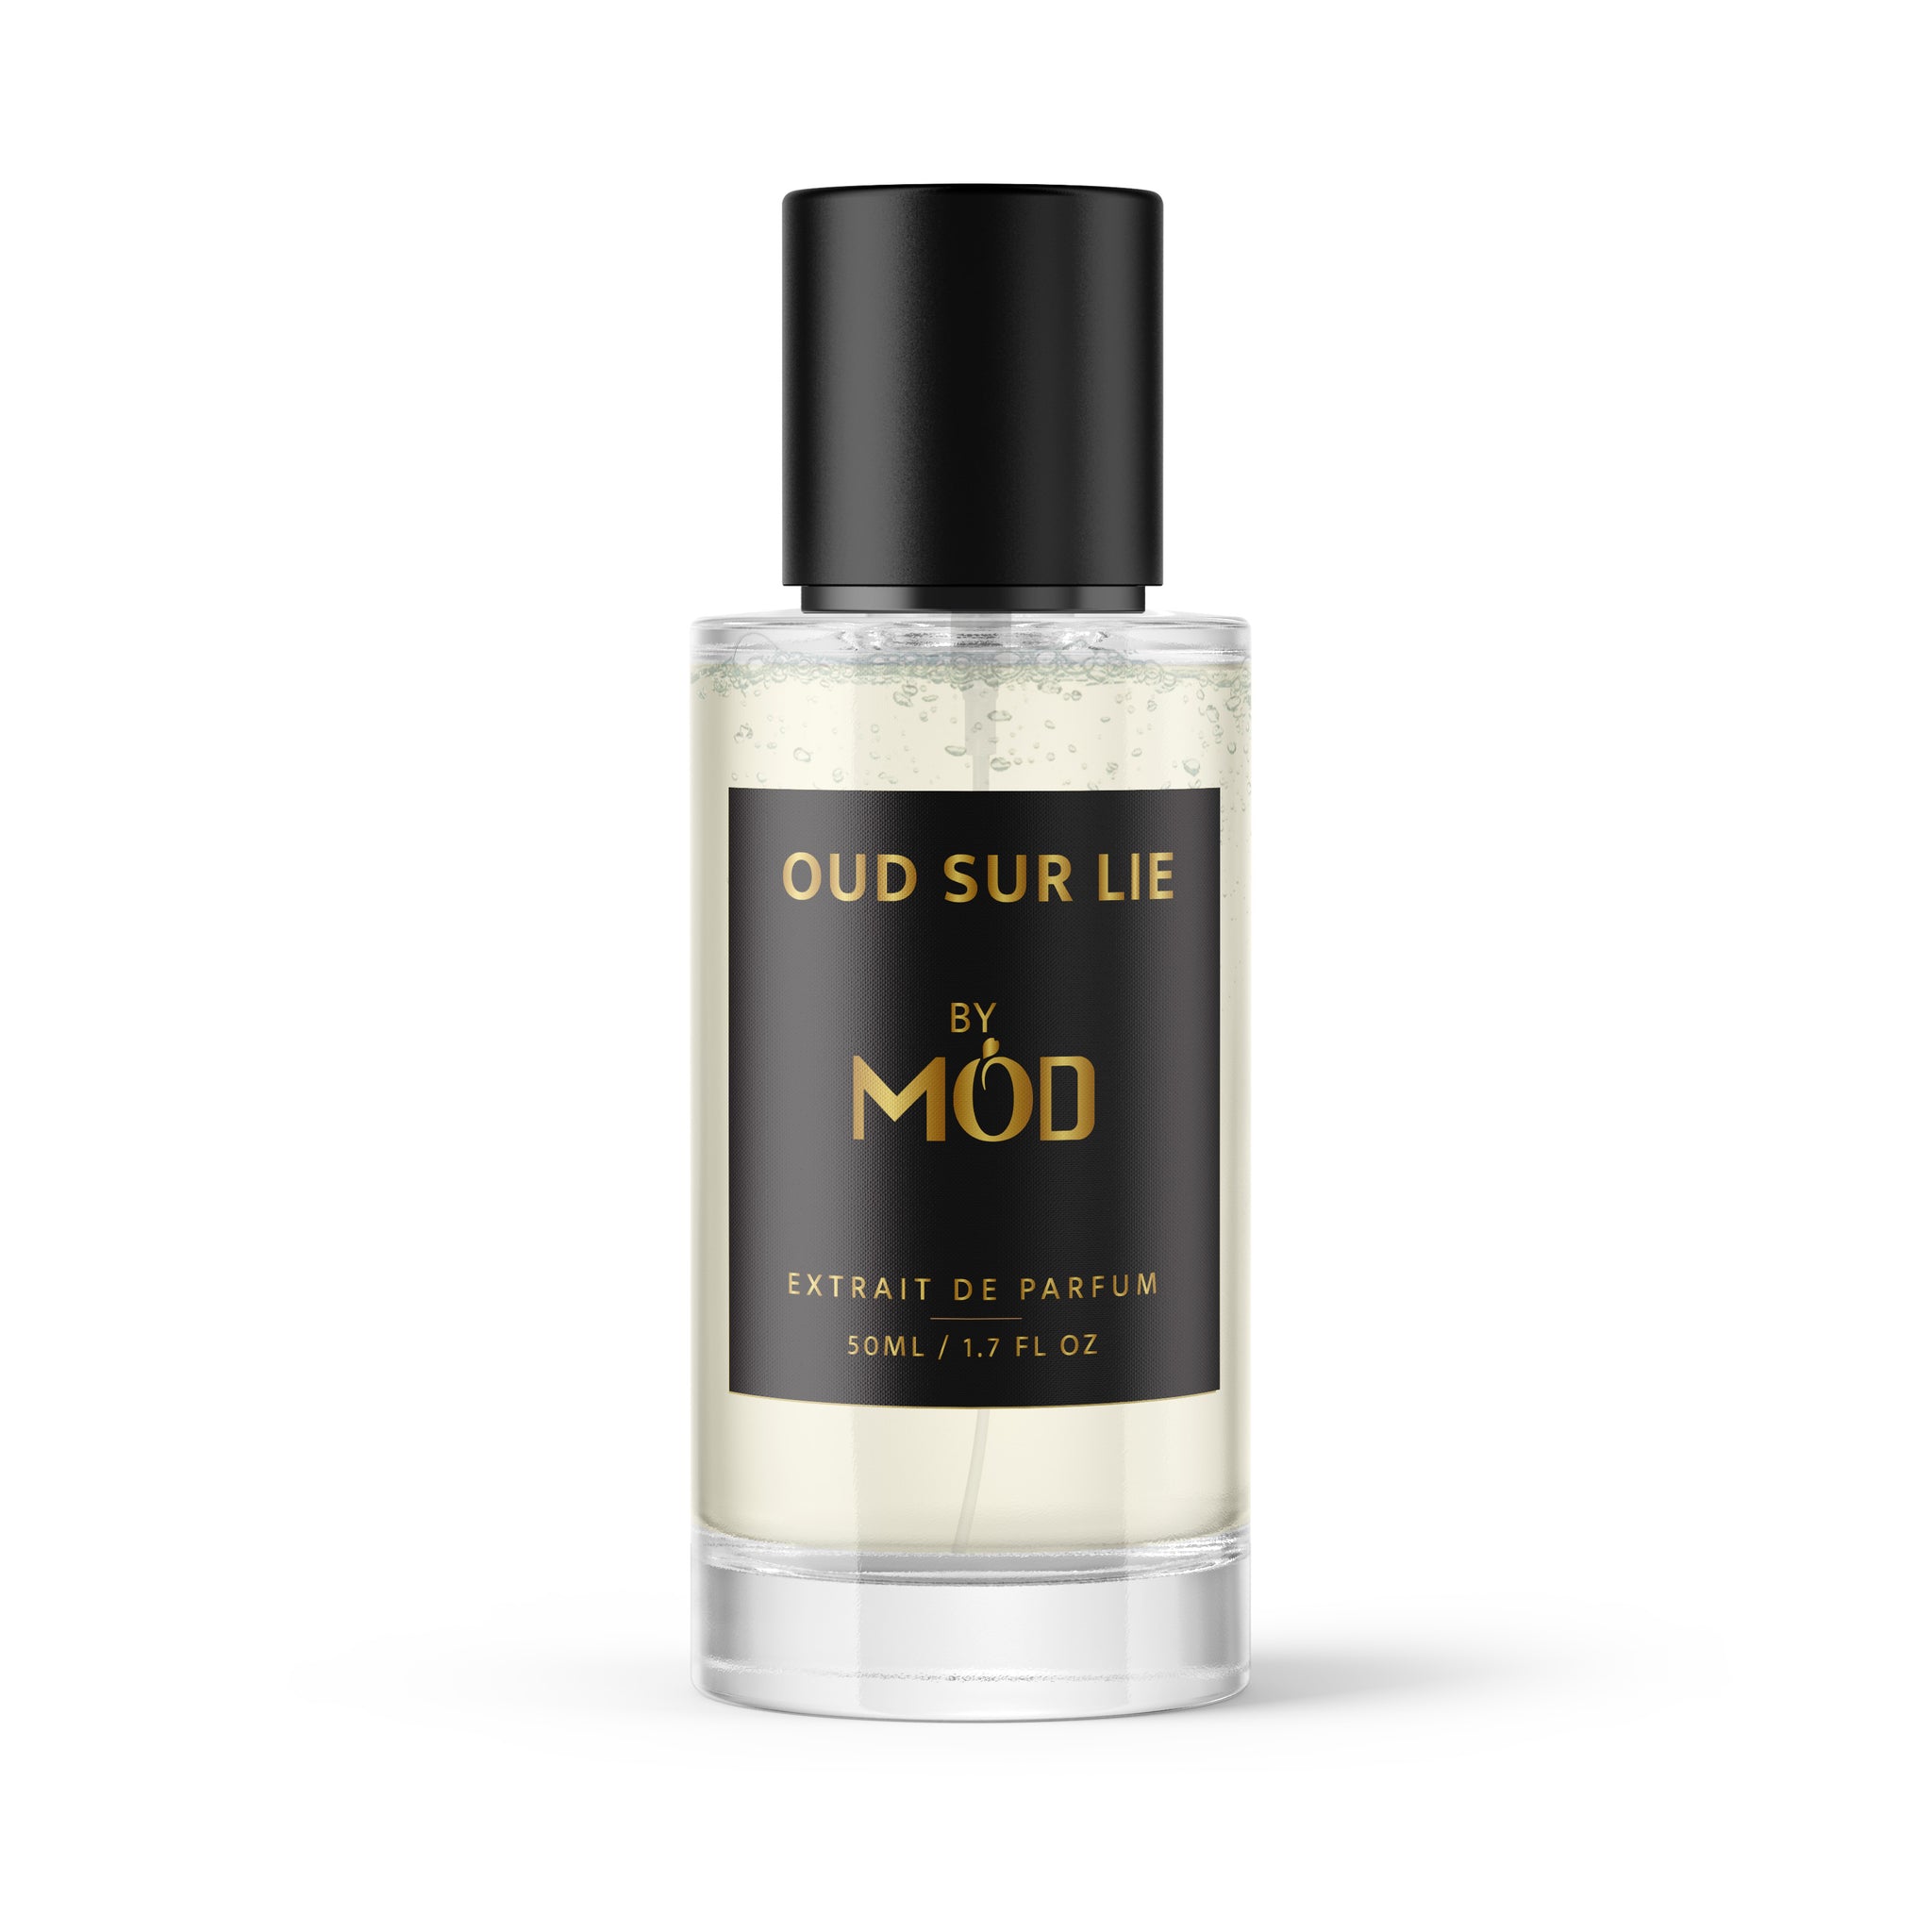 Oud Sur Lie - Mod Fragrances